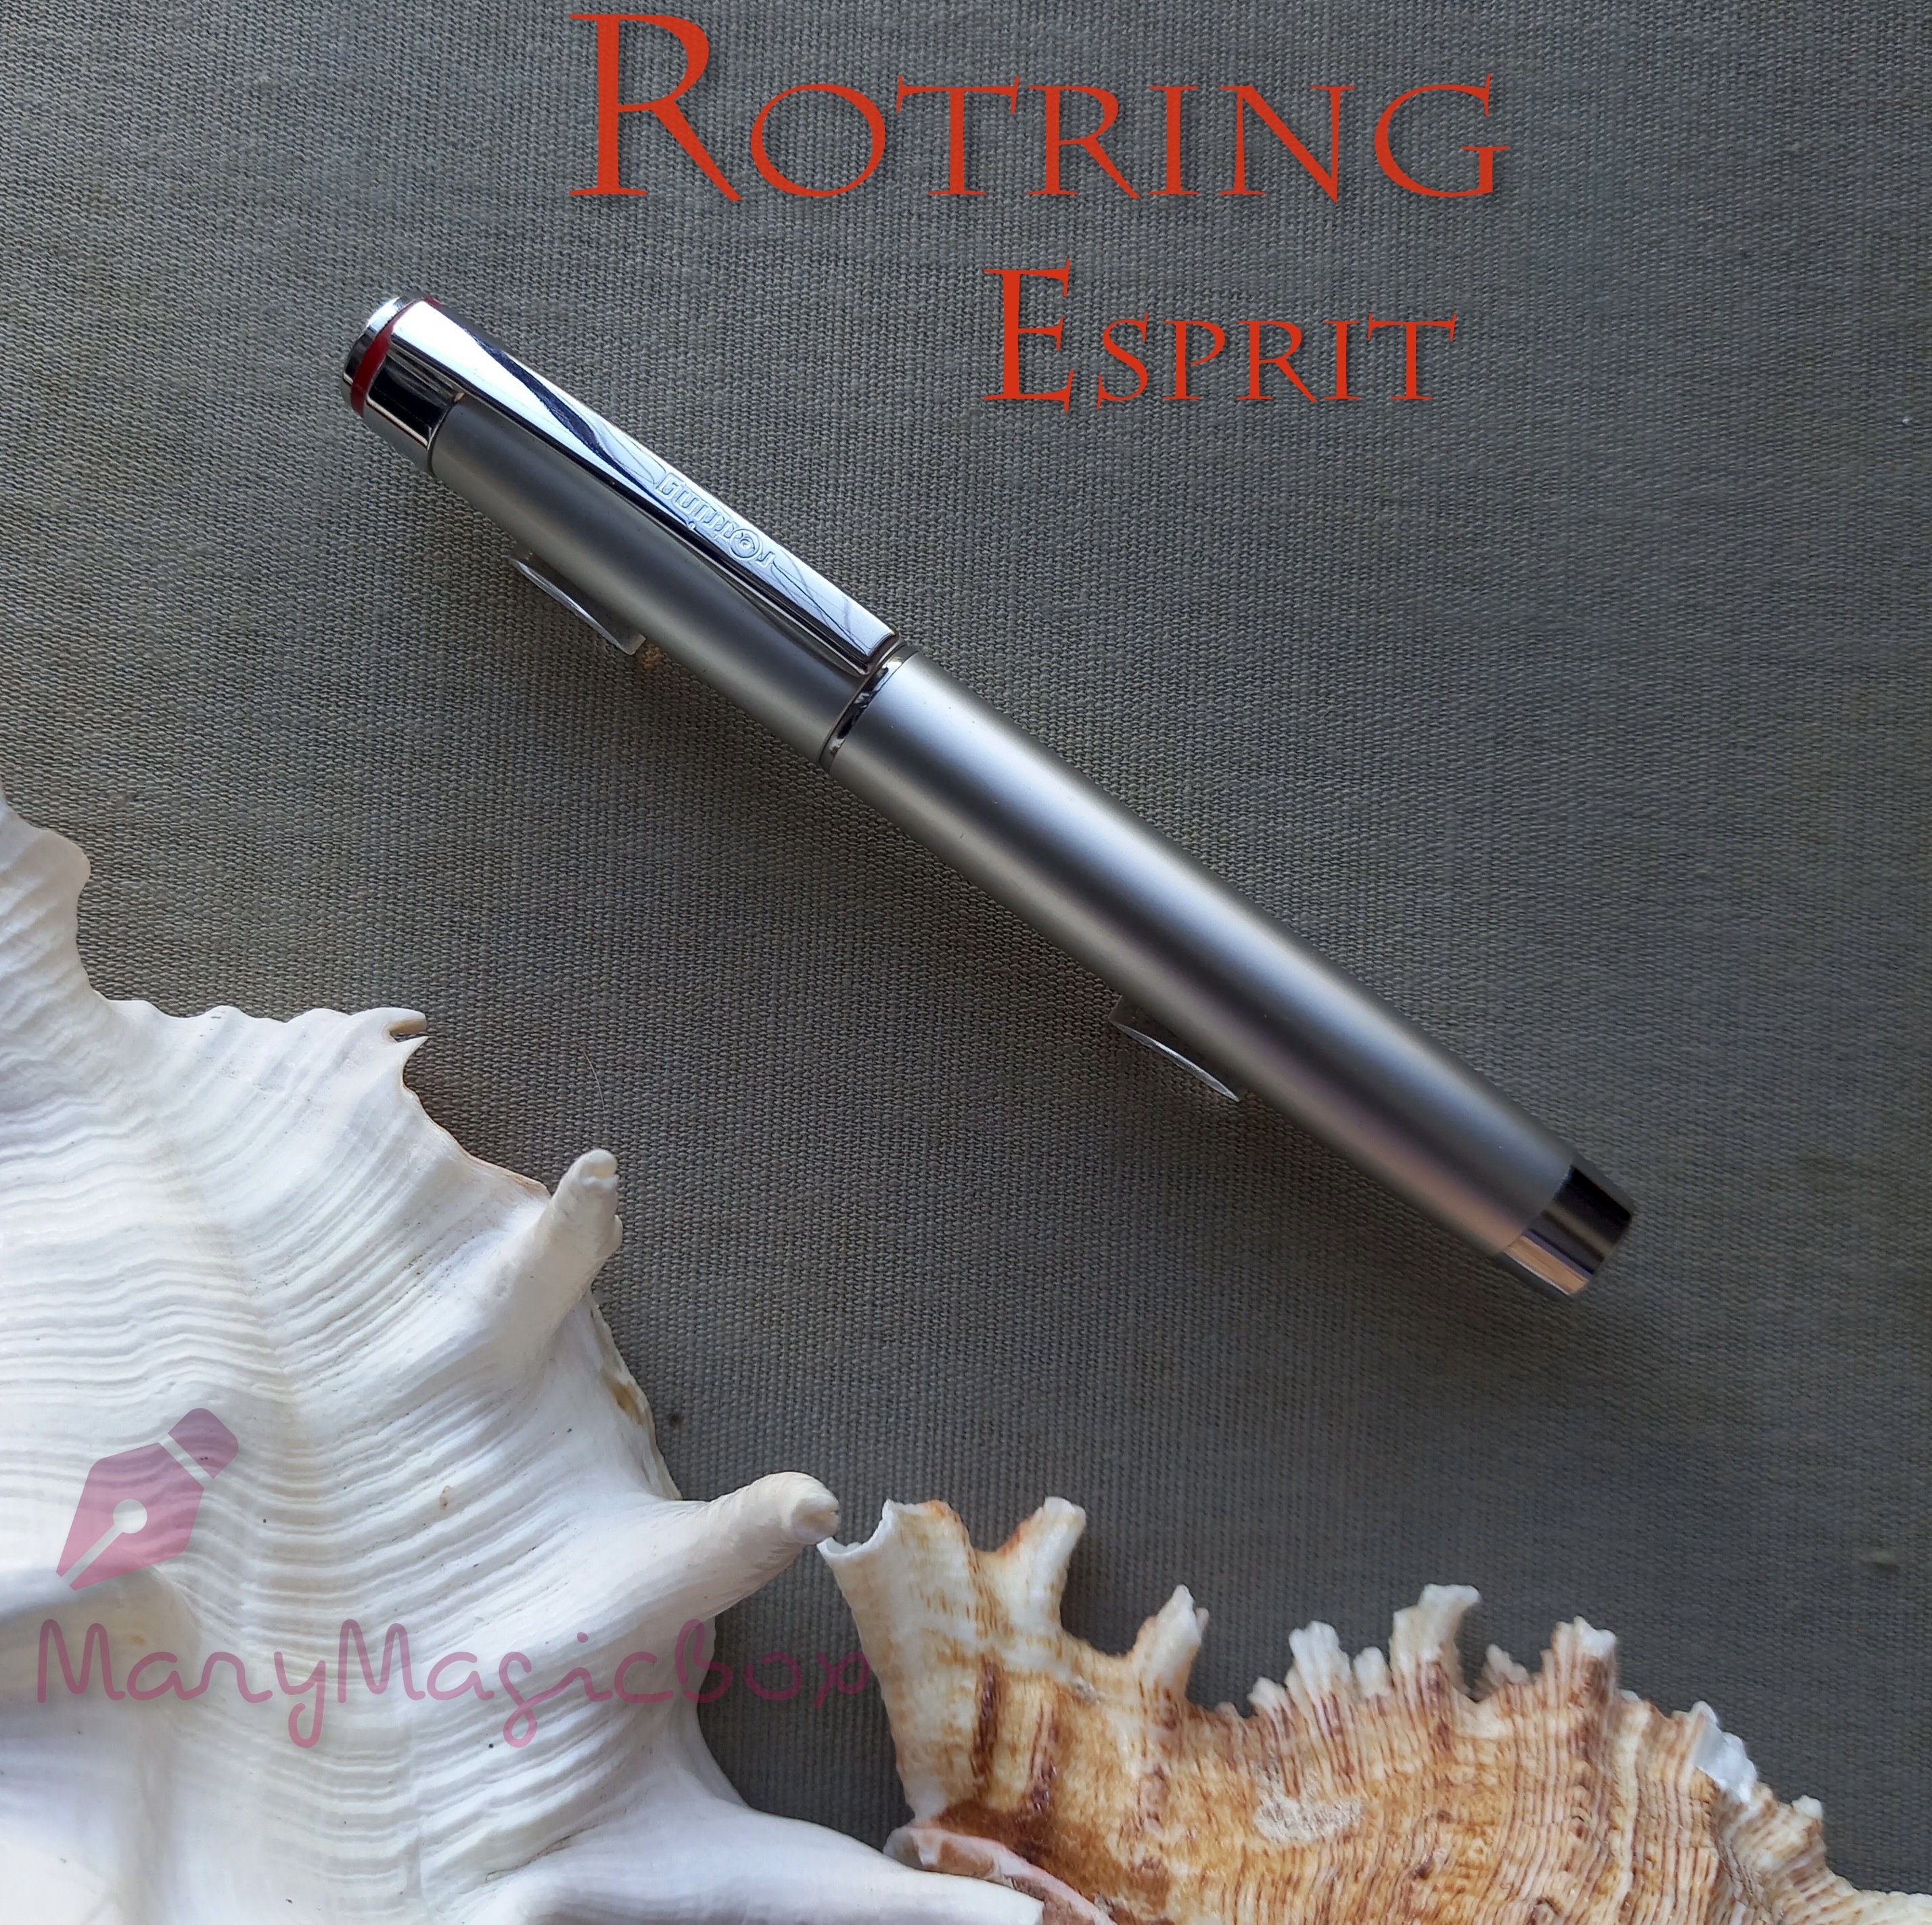 Rotring Esprit Vintage Fountain Pen Silver nibm excellent - Etsy